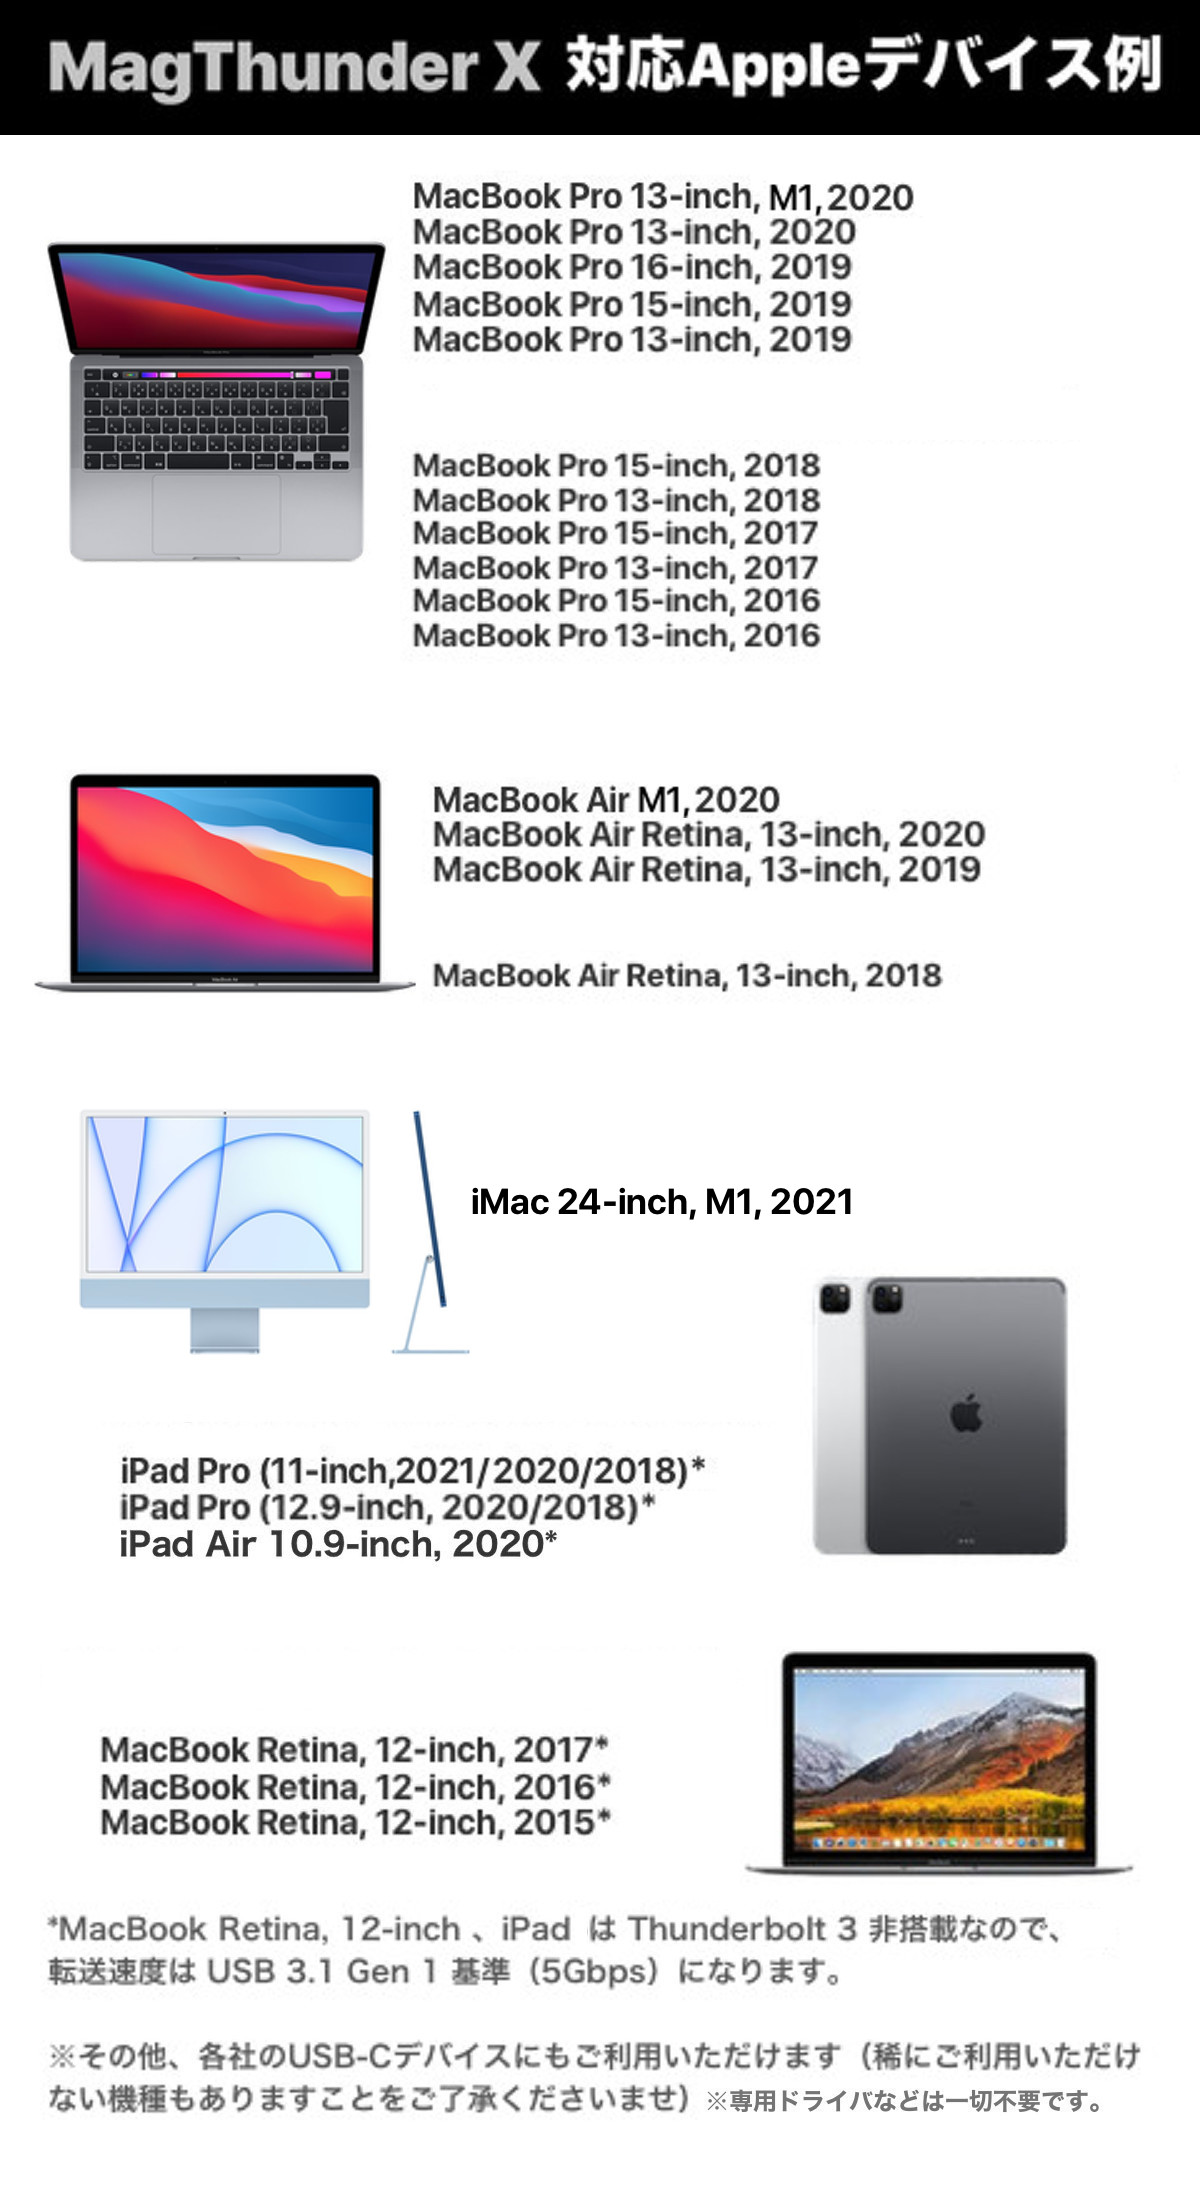 macbook pro 12 inch 2017